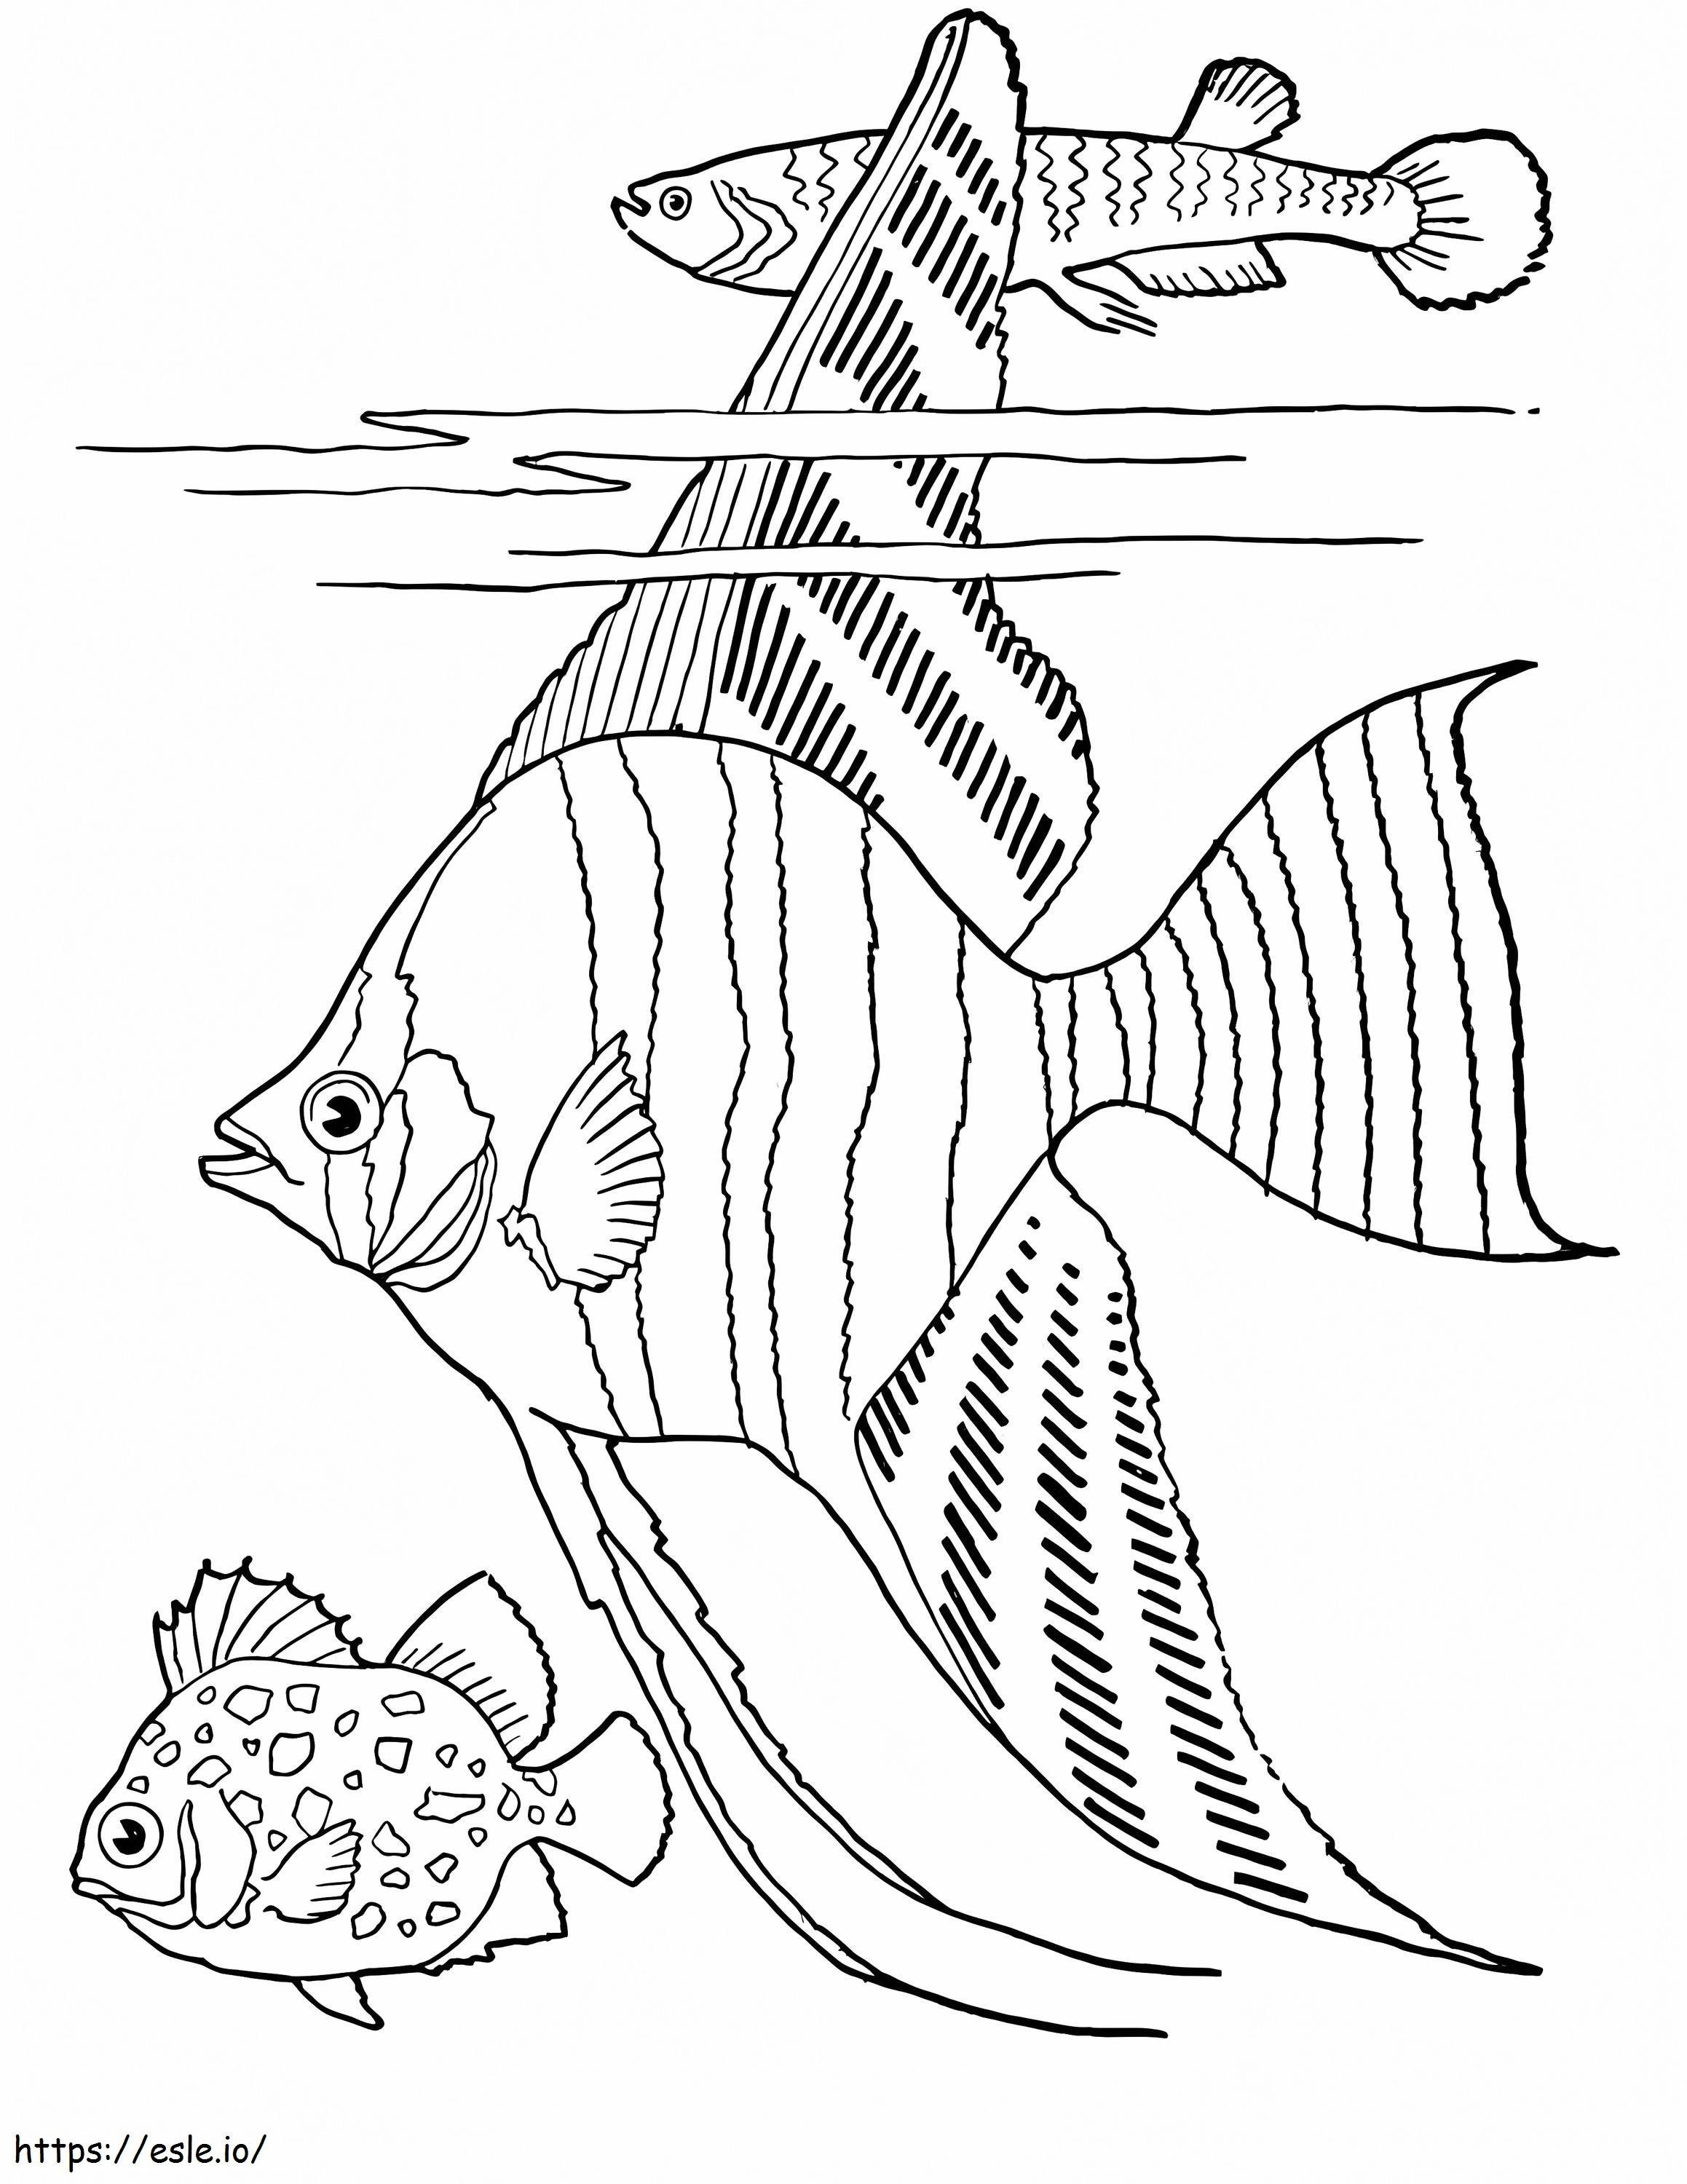 Trzy normalne ryby kolorowanka